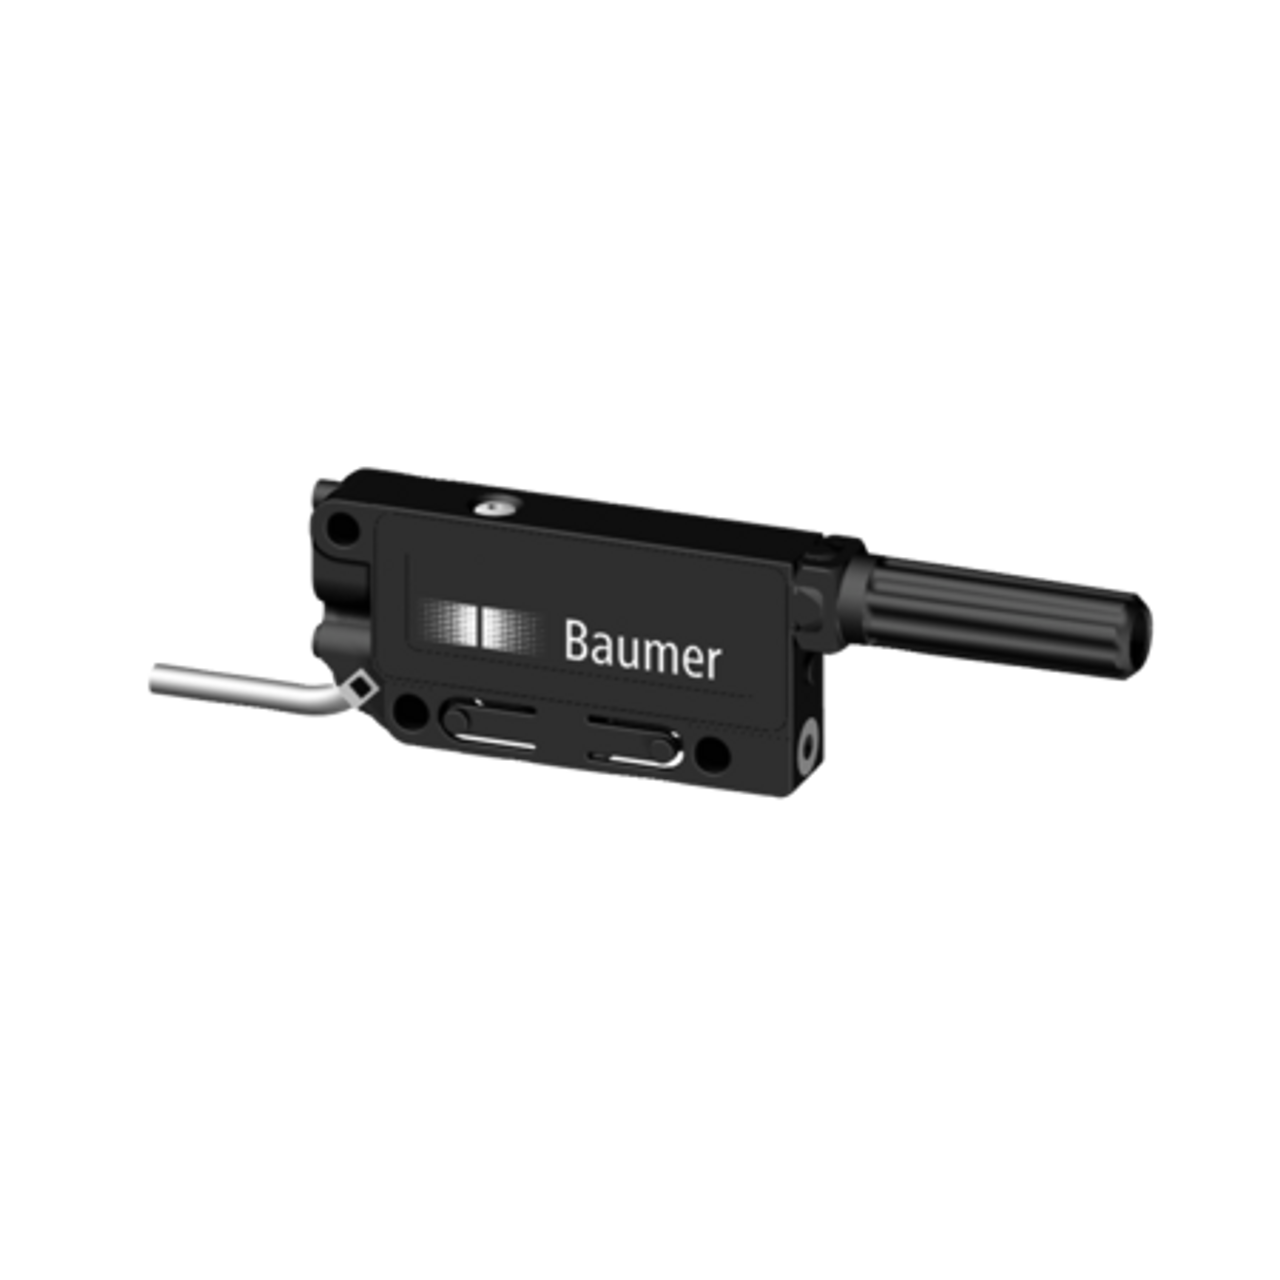 Baumer 11007901 11007901 - 3